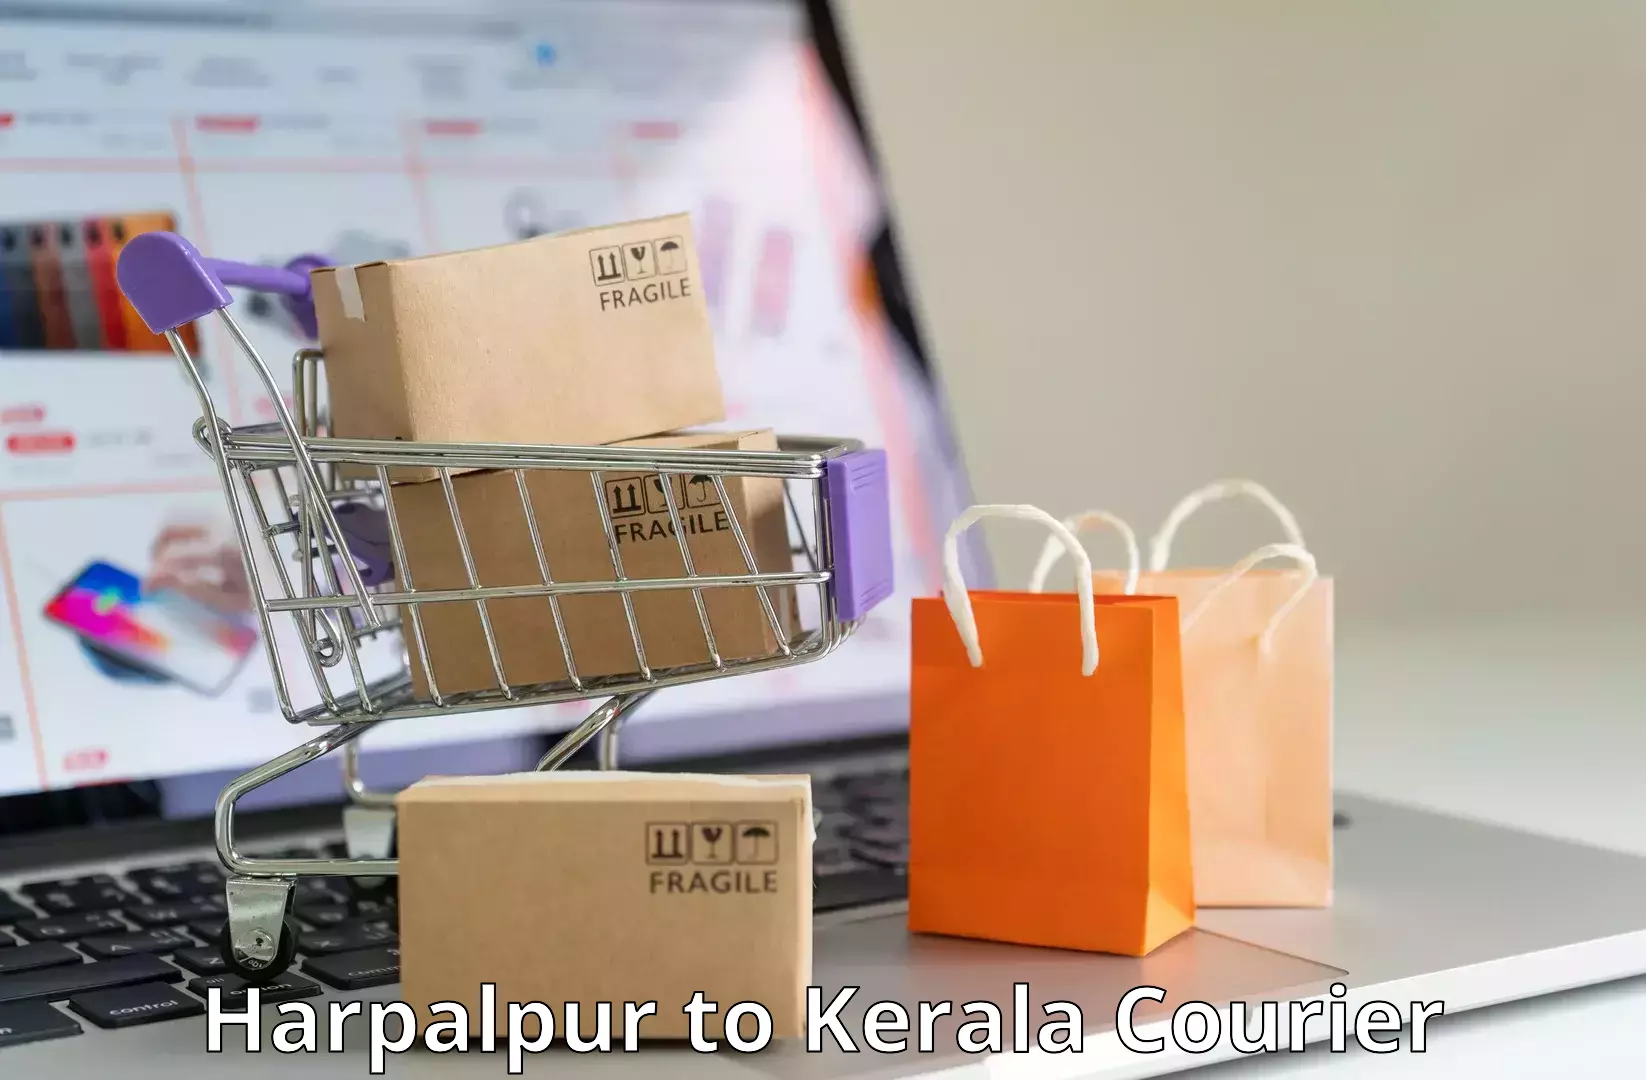 Secure packaging in Harpalpur to Koyilandy